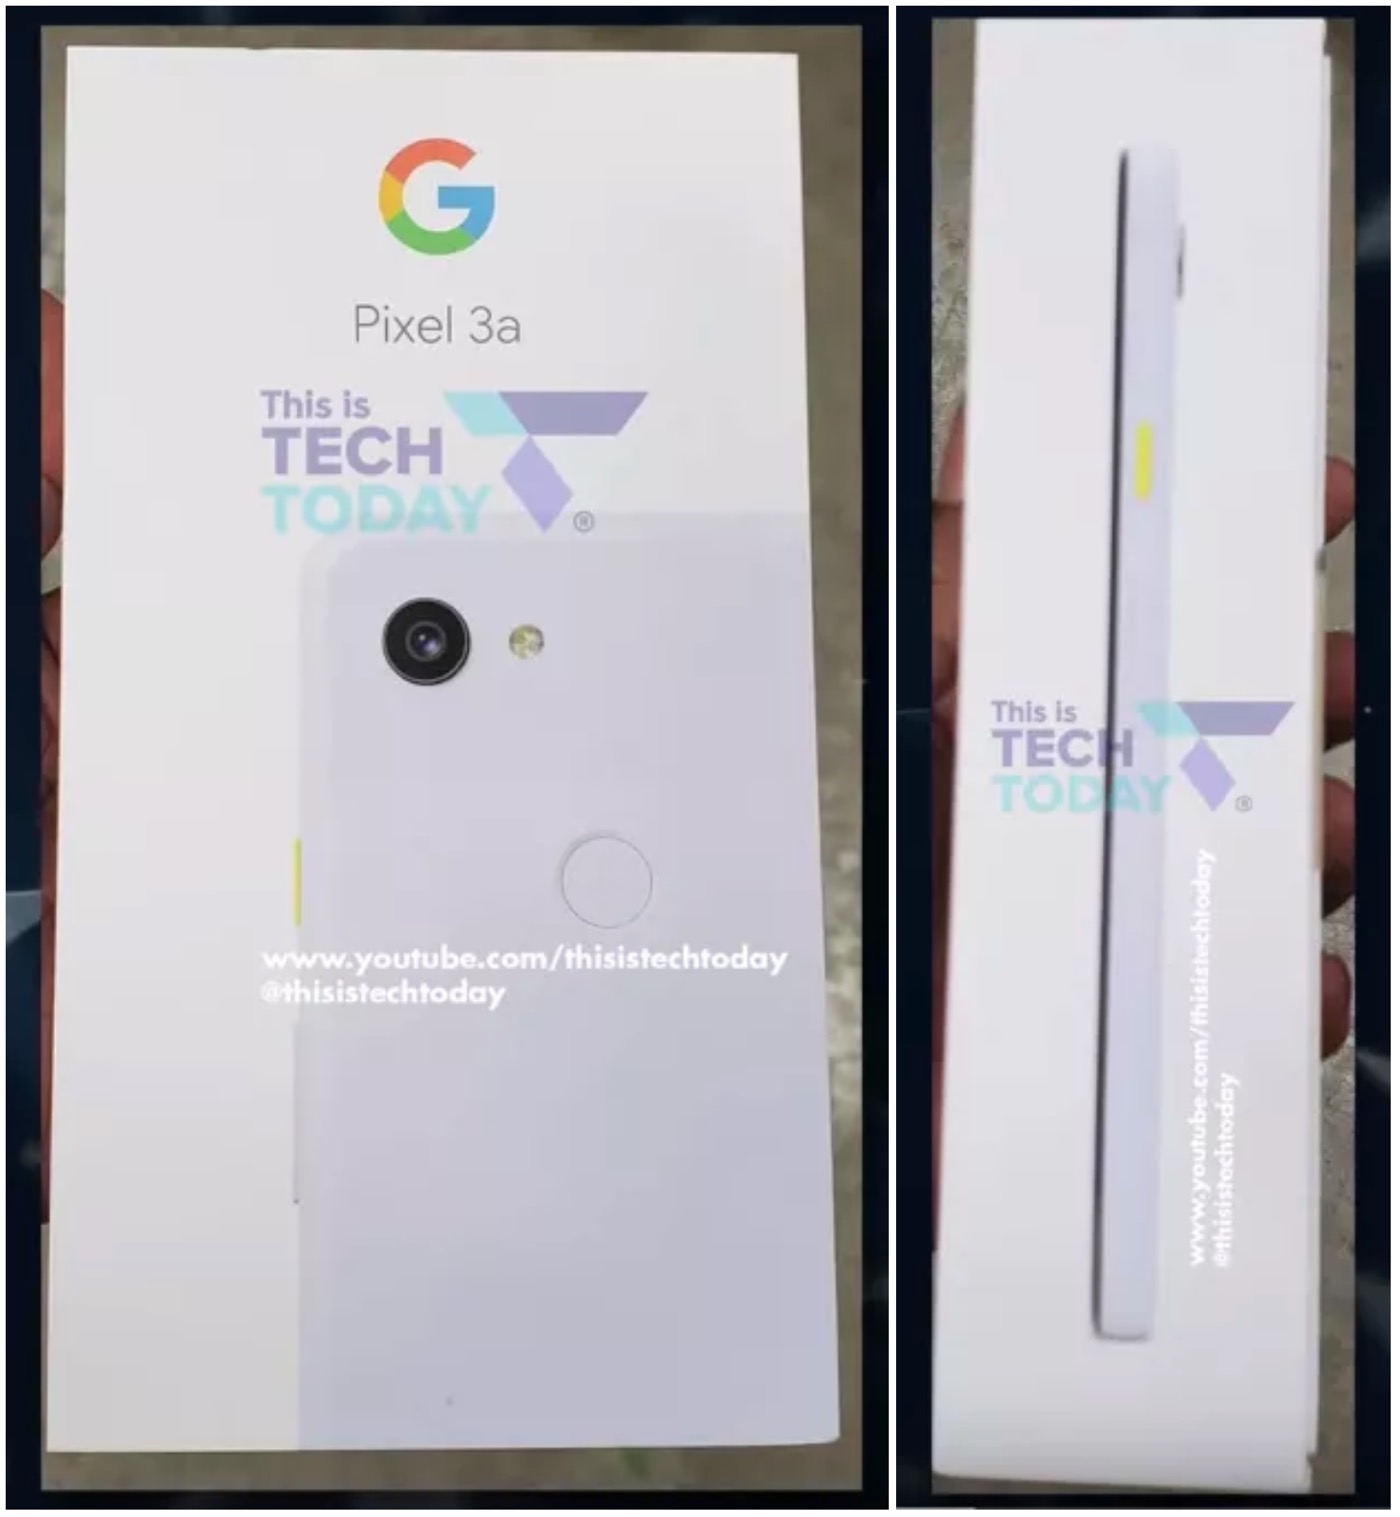 ｢Google Pixel 3a｣の米国での販売価格は399ドルからか